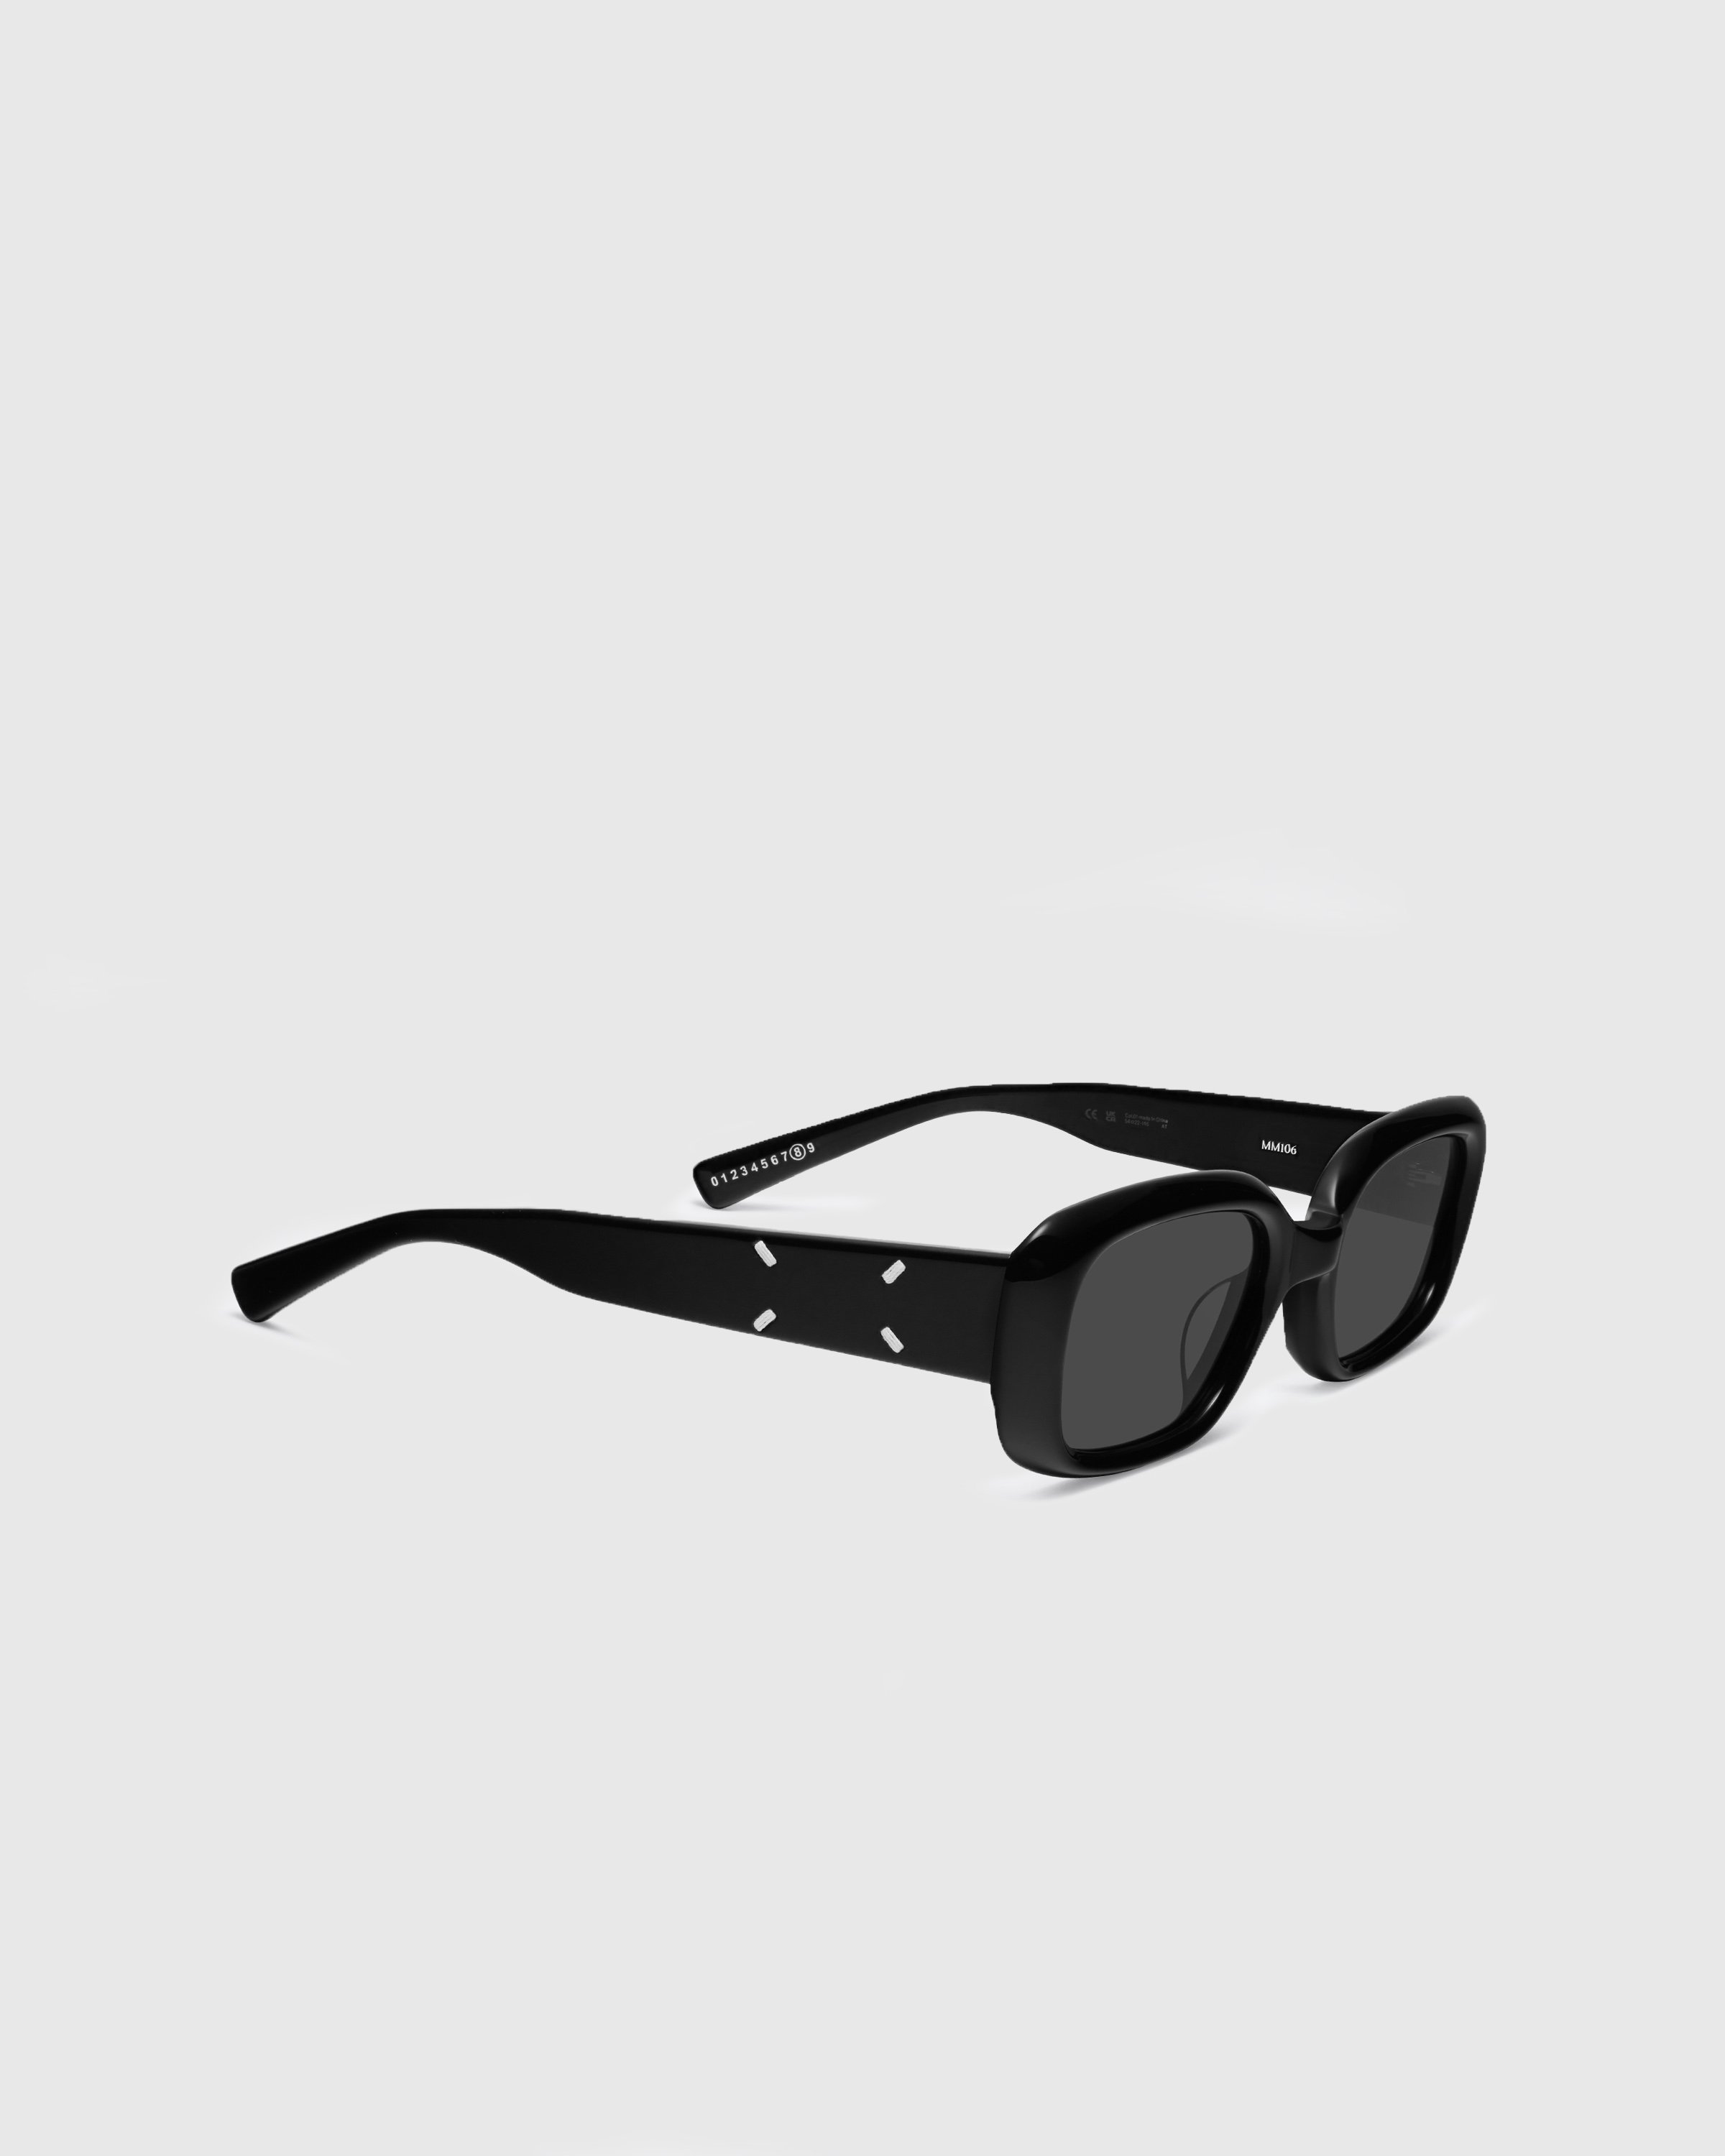 Maison Margiela x Gentle Monster - Sunglasses MM106-01 - Accessories - Black - Image 2